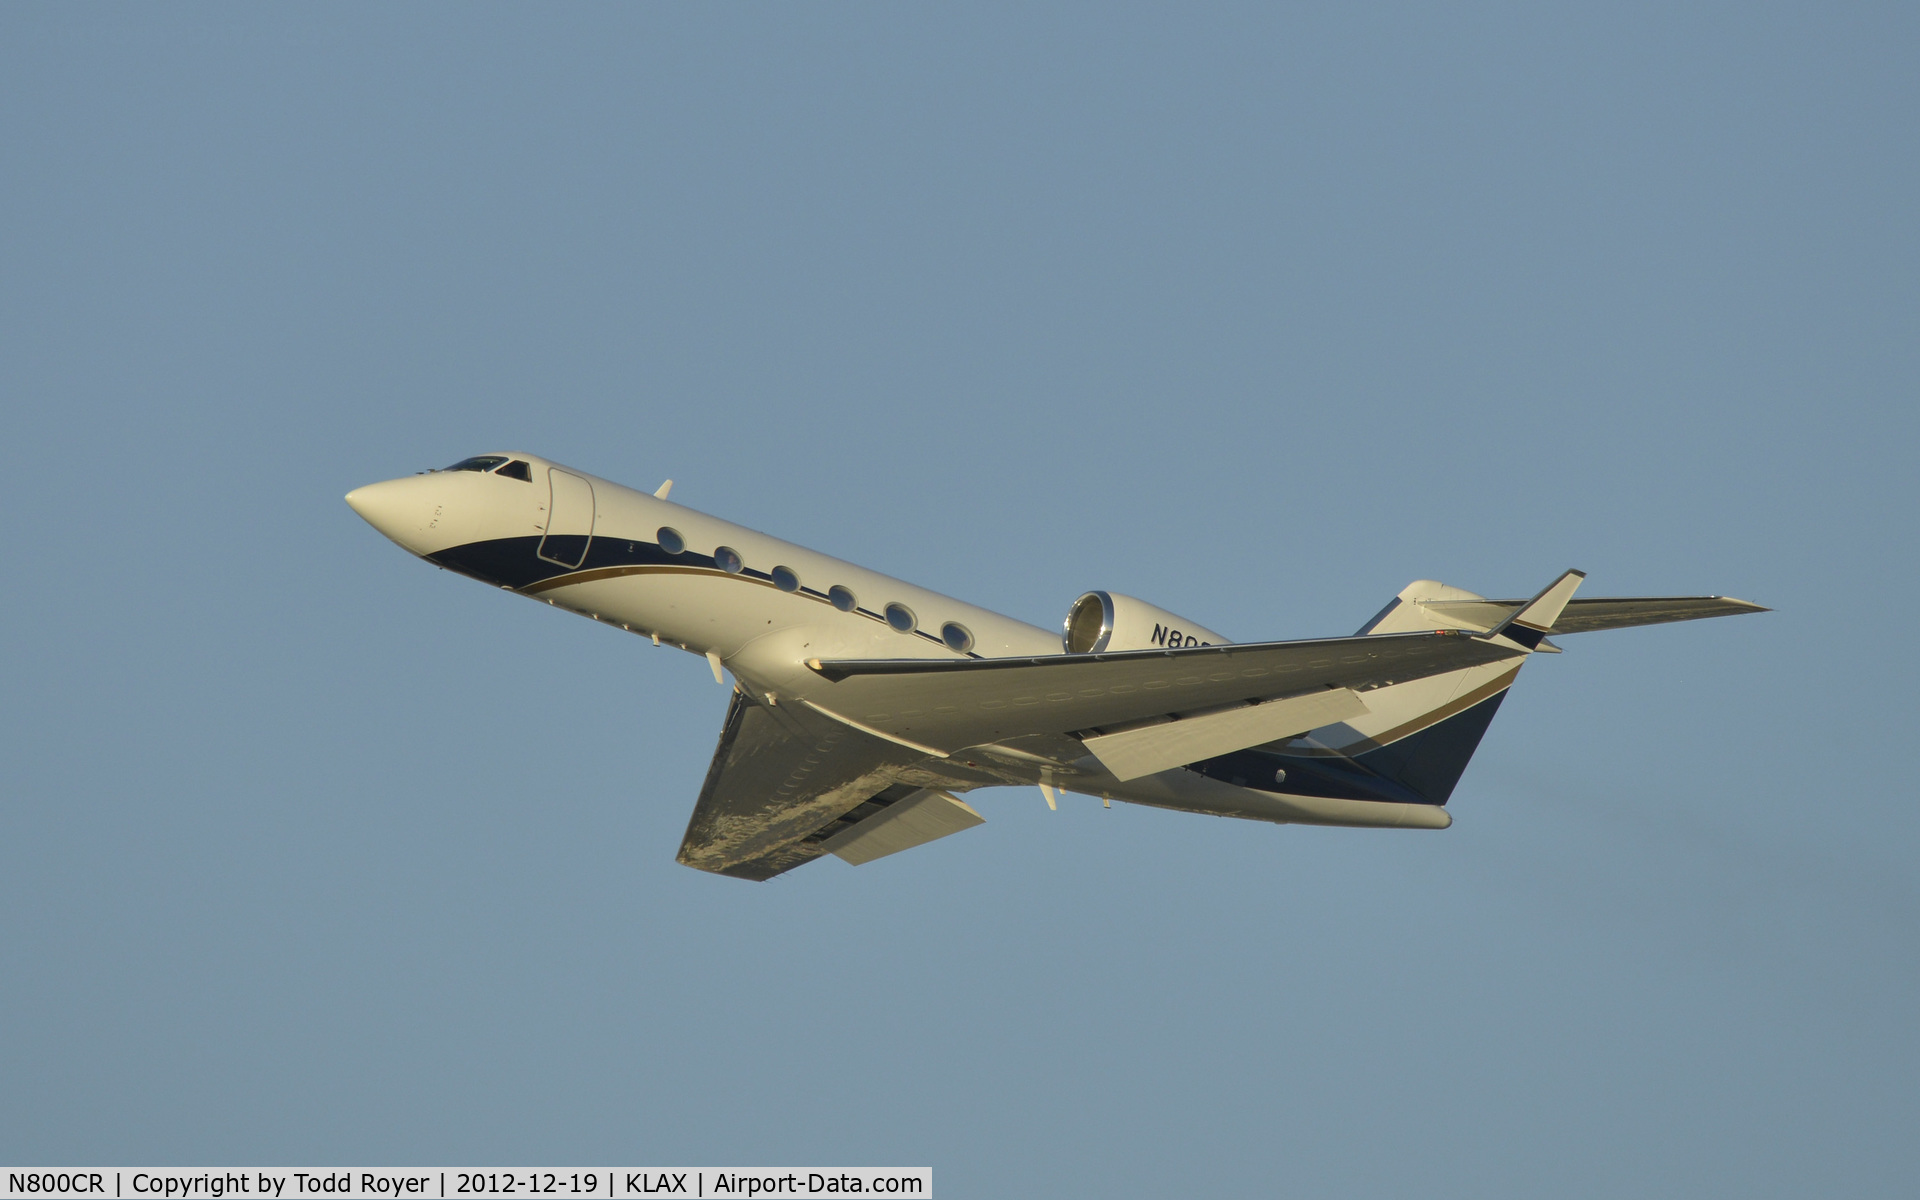 N800CR, 1998 Gulfstream Aerospace G-IV C/N 1334, Departing LAX